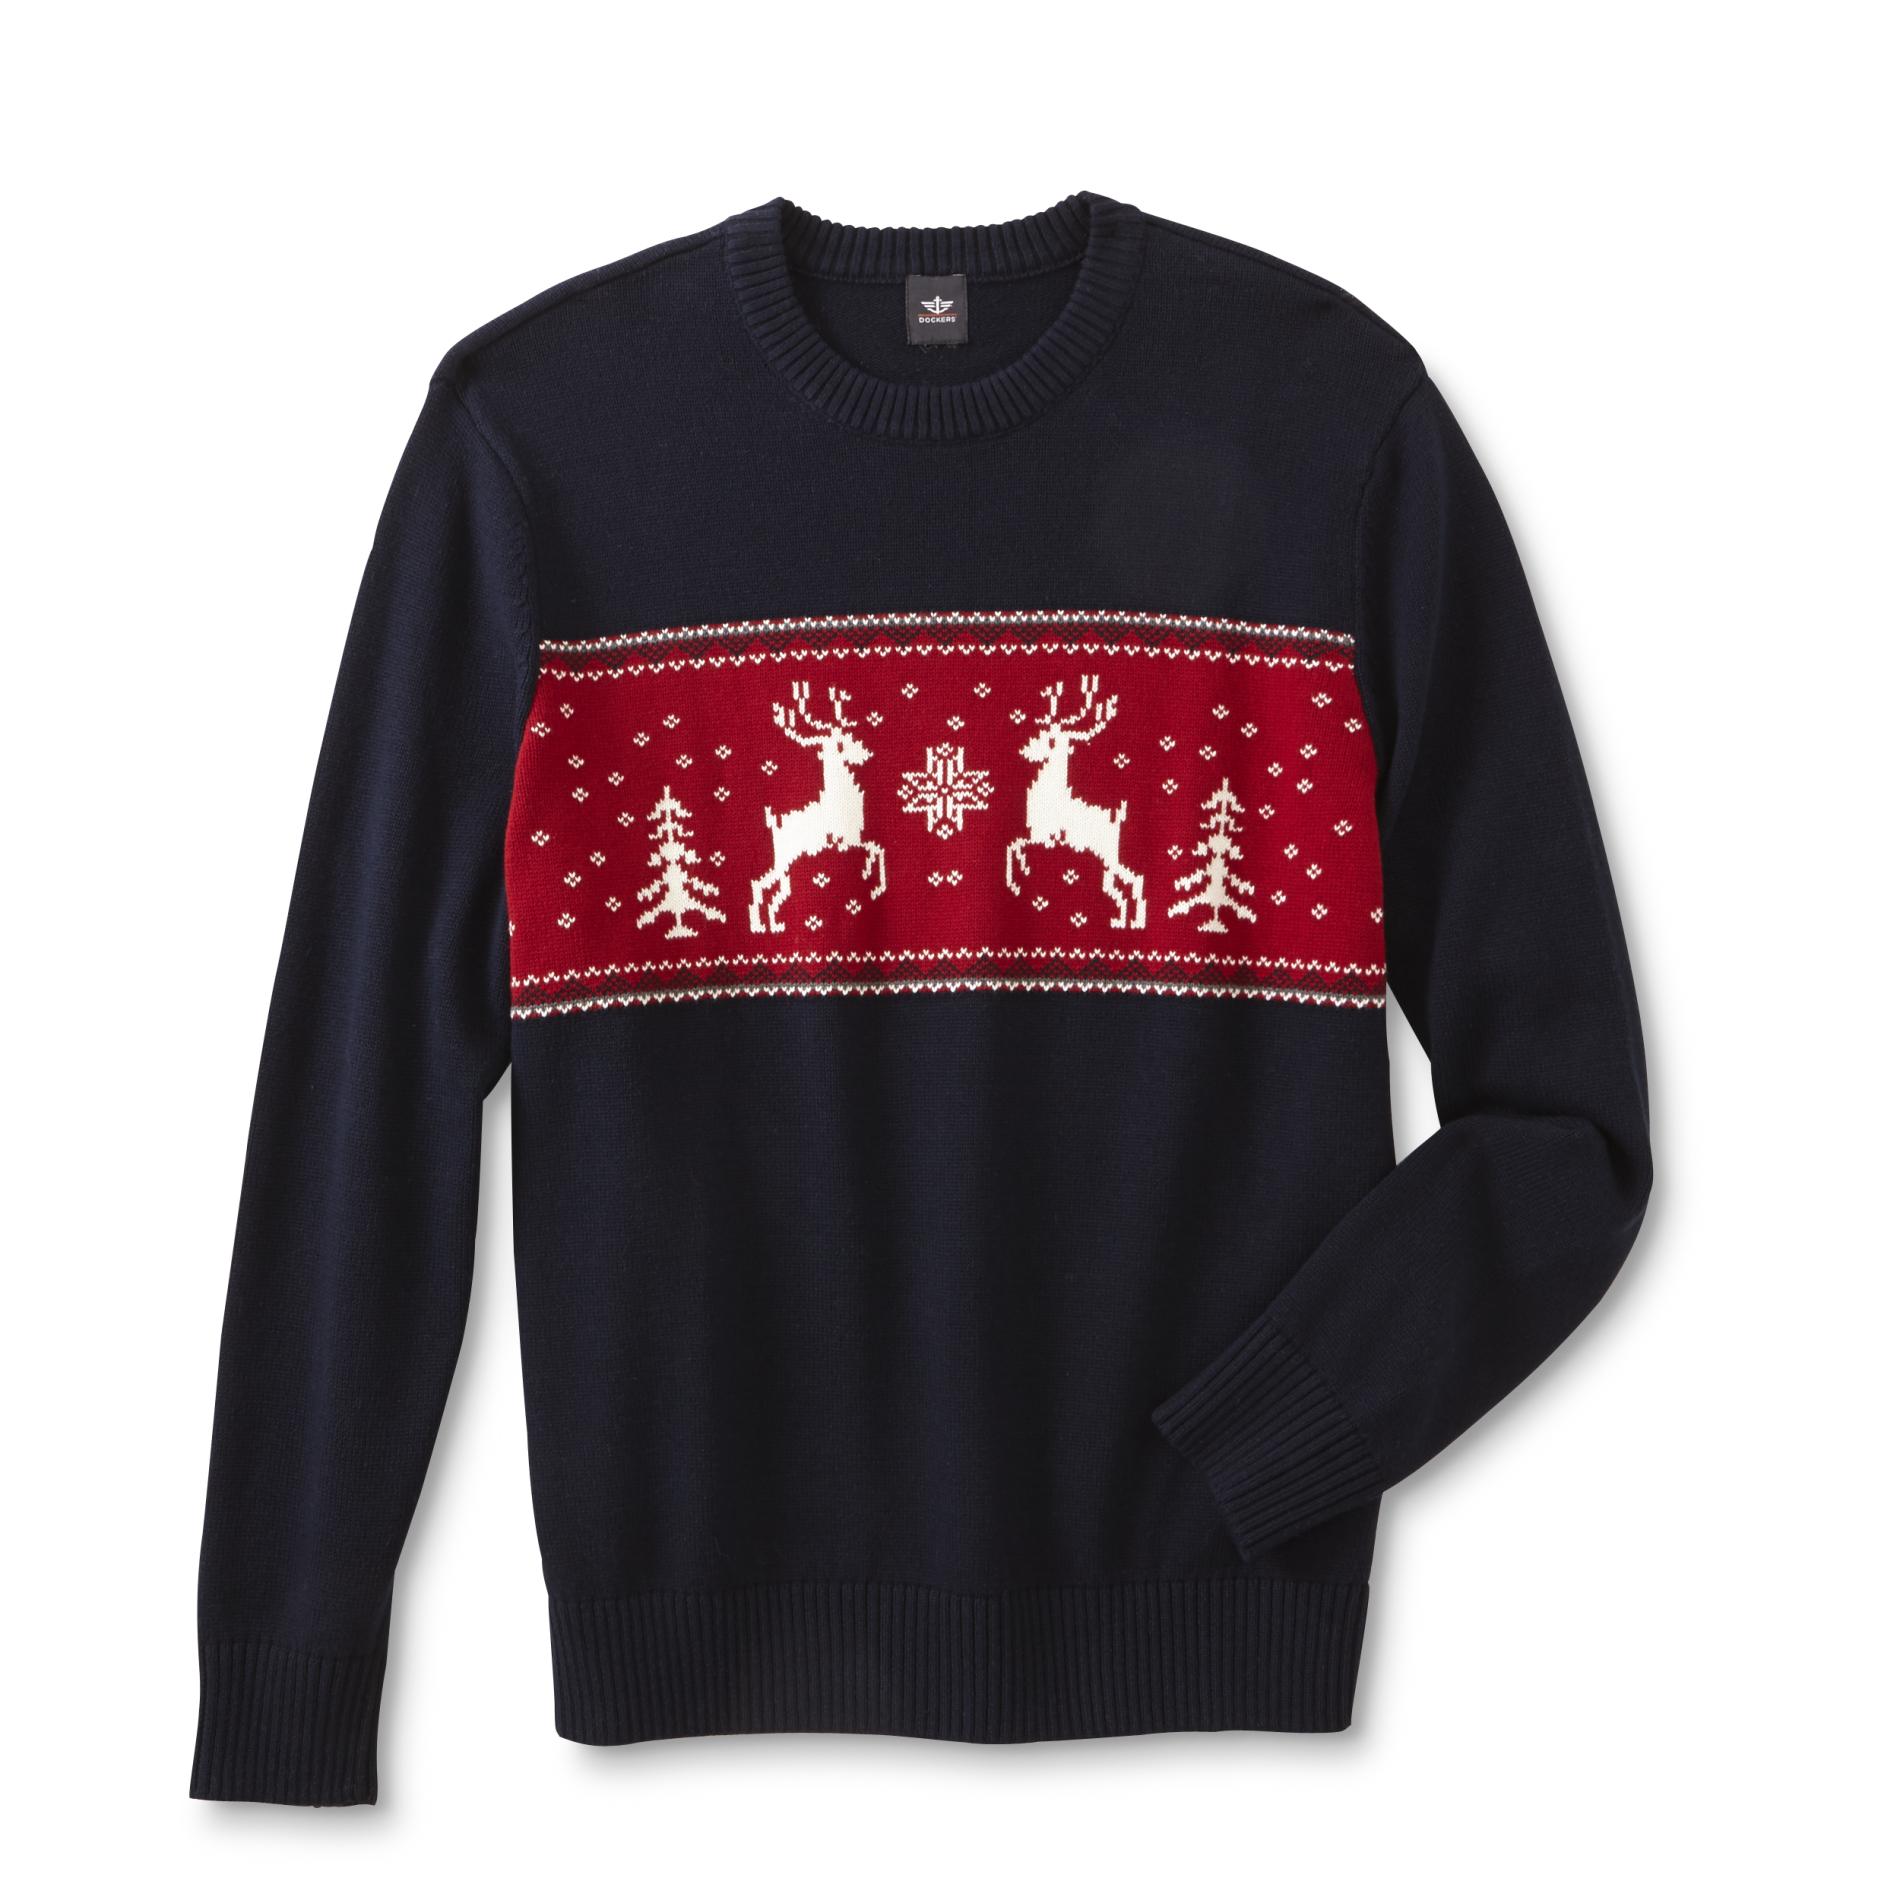 Dockers Men's Christmas Sweater - Reindeer